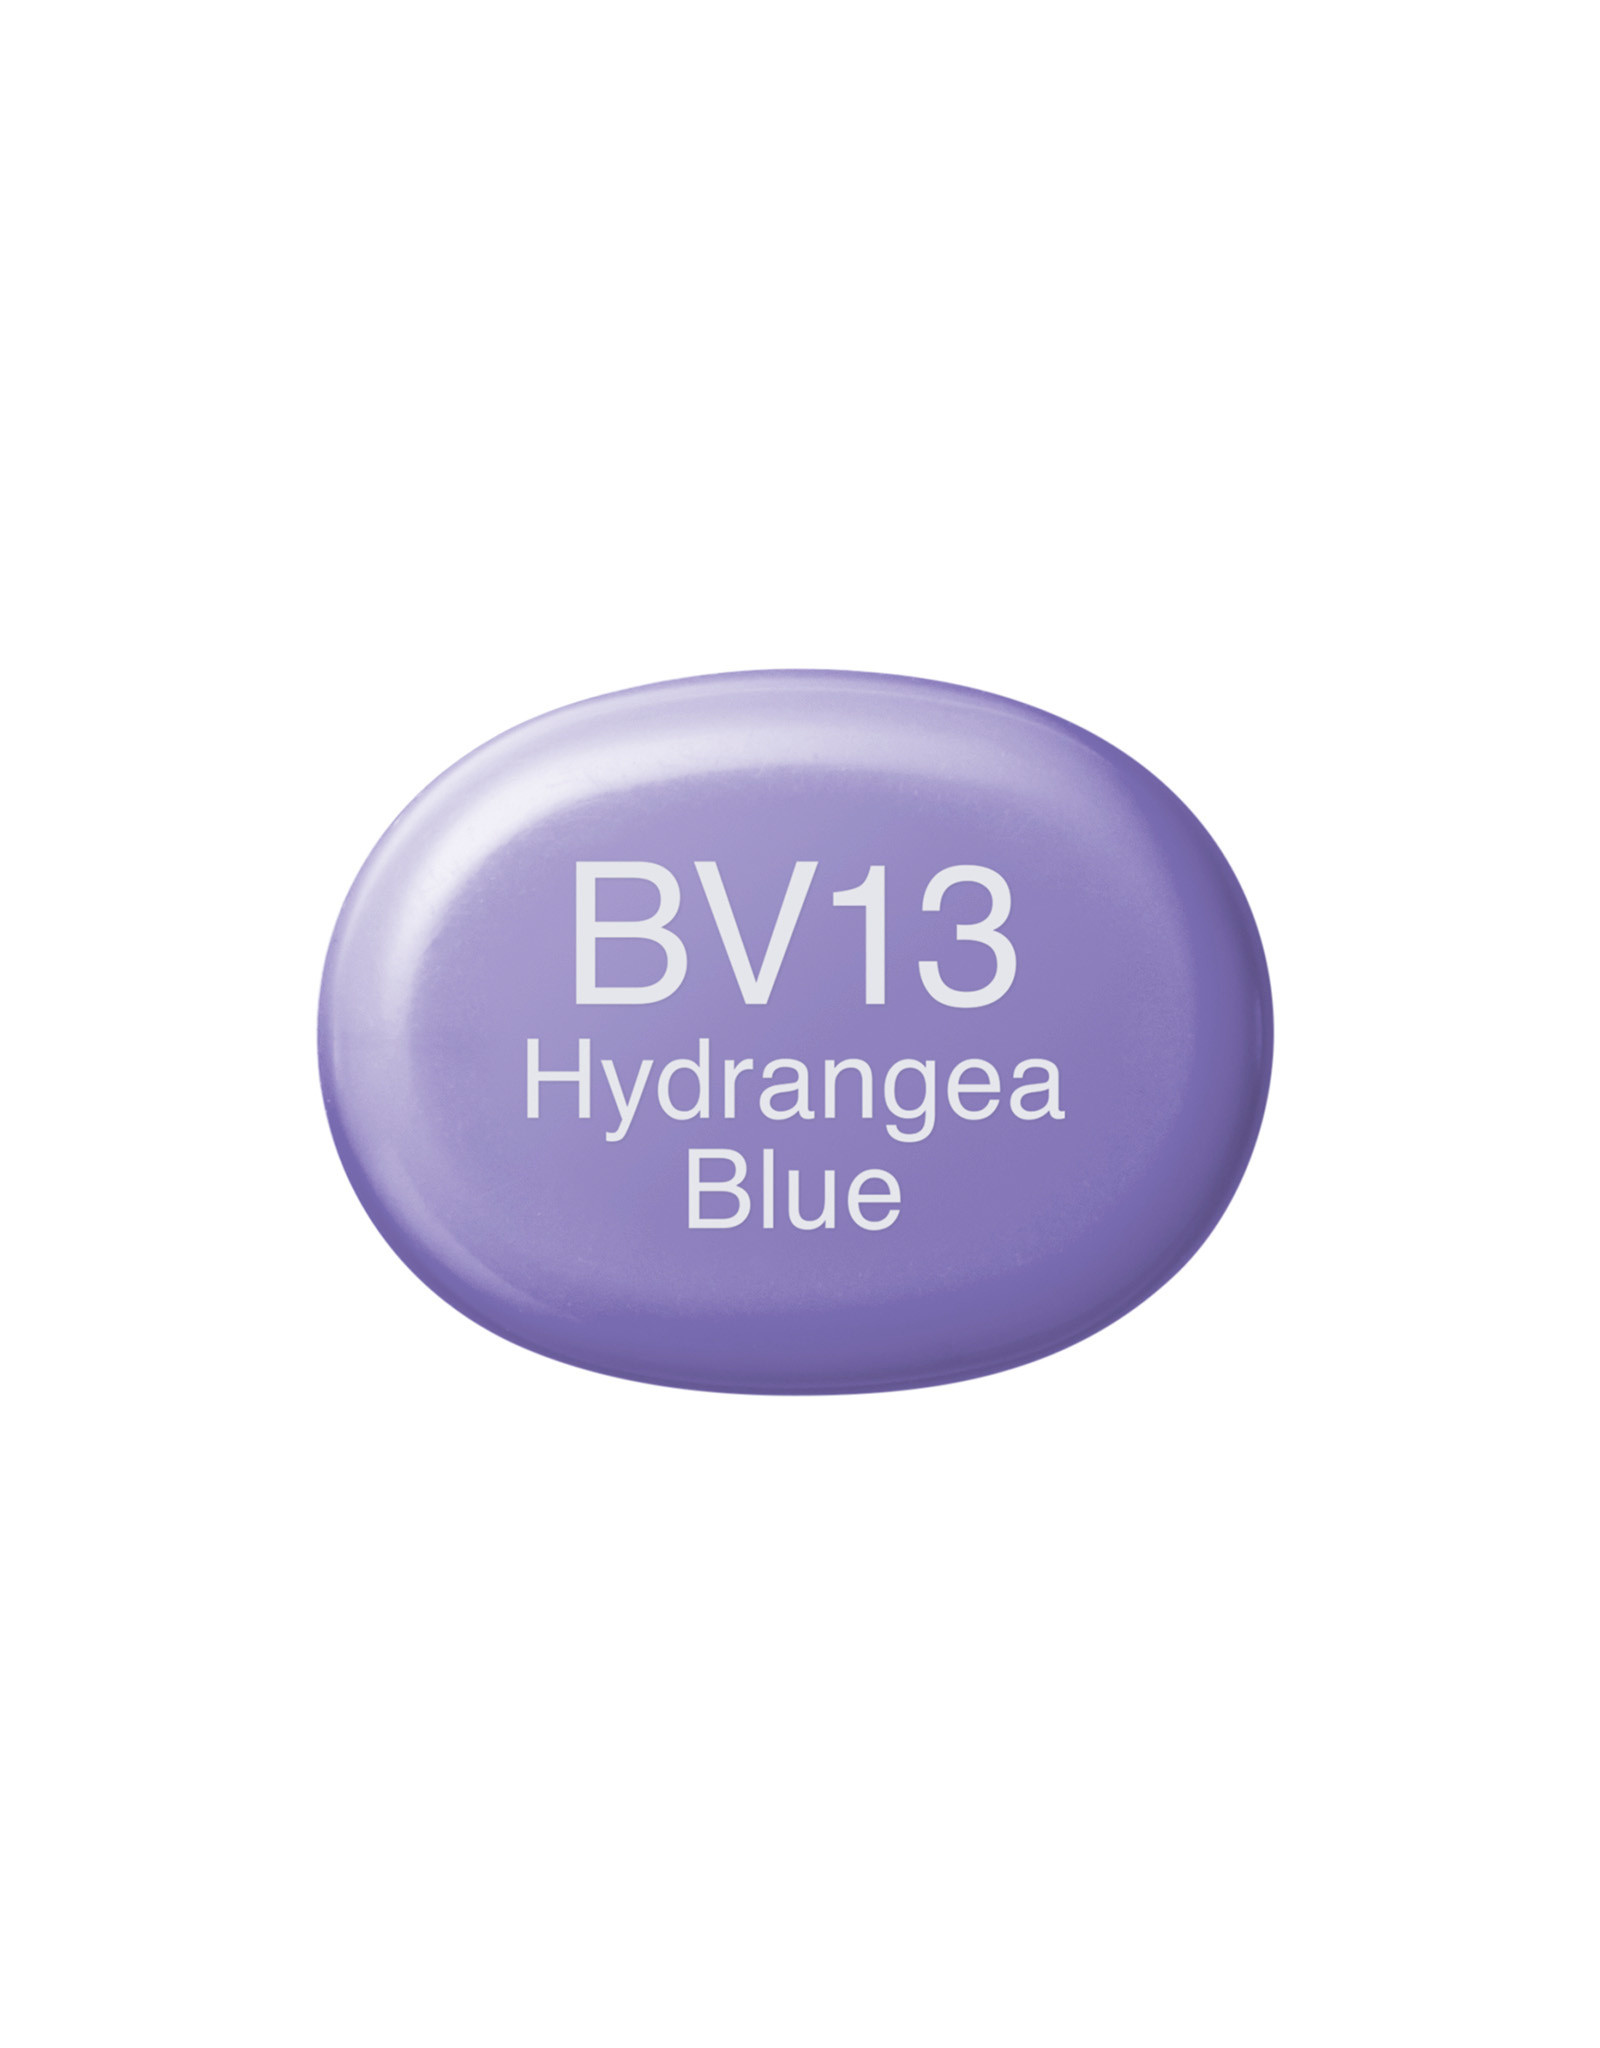 COPIC COPIC Sketch Marker BV13 Hydrangea Blue